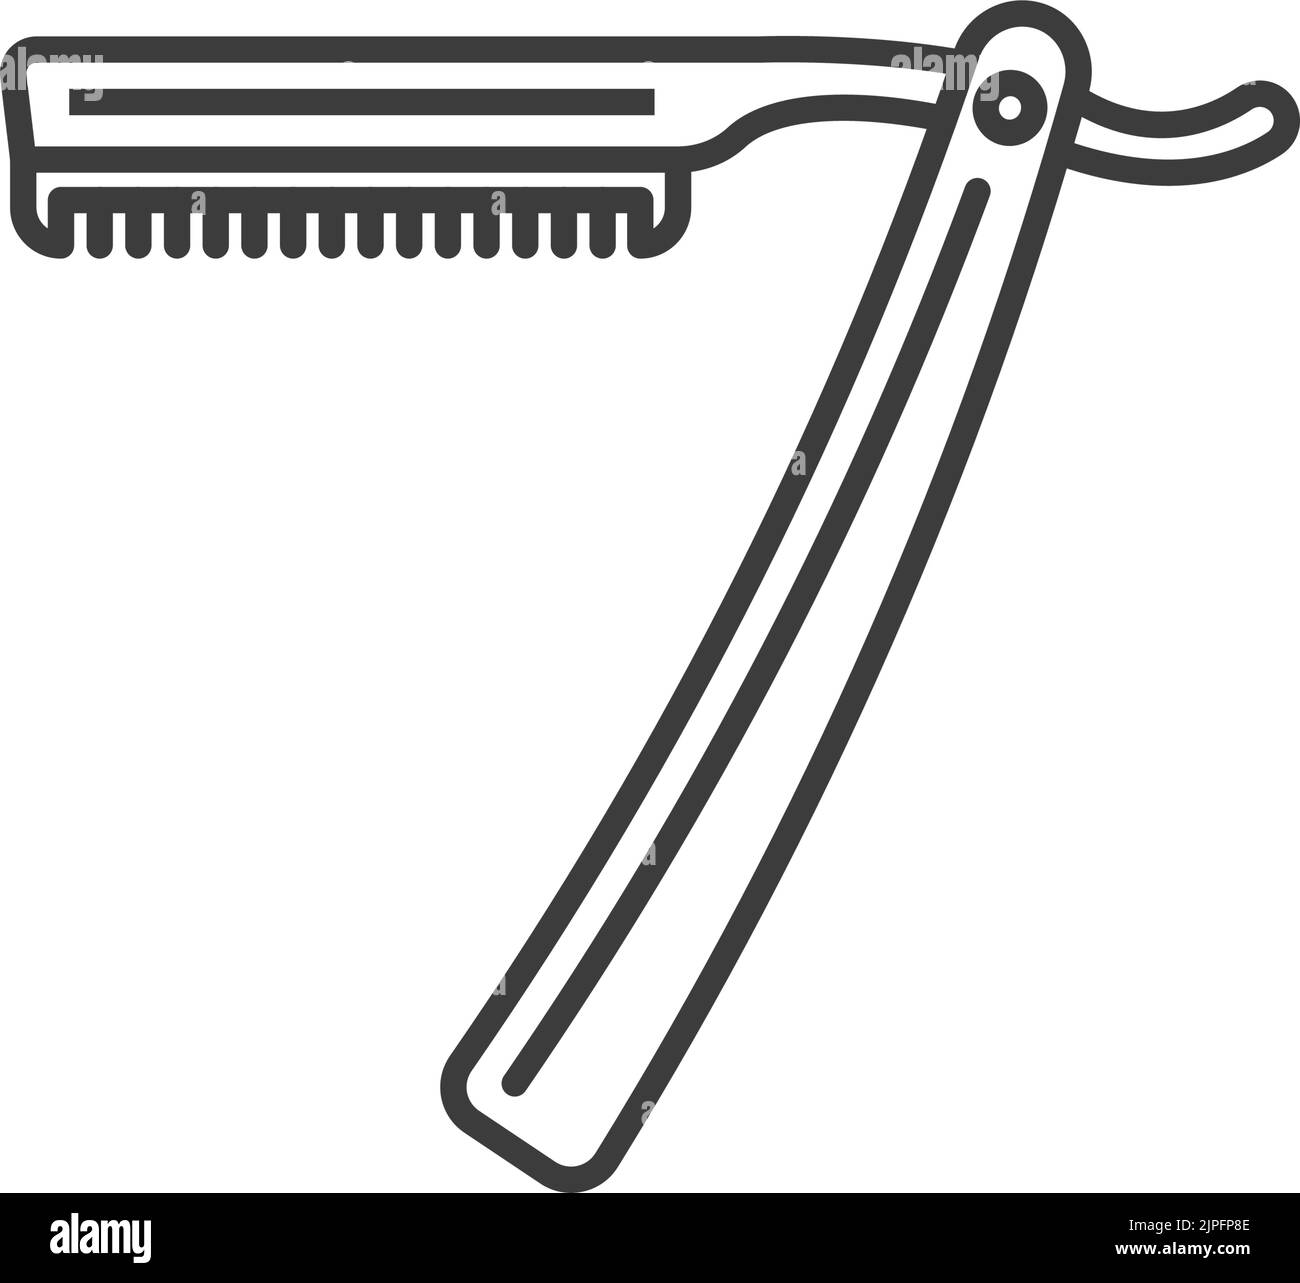 Couteau à barbe Banque d'images noir et blanc - Alamy